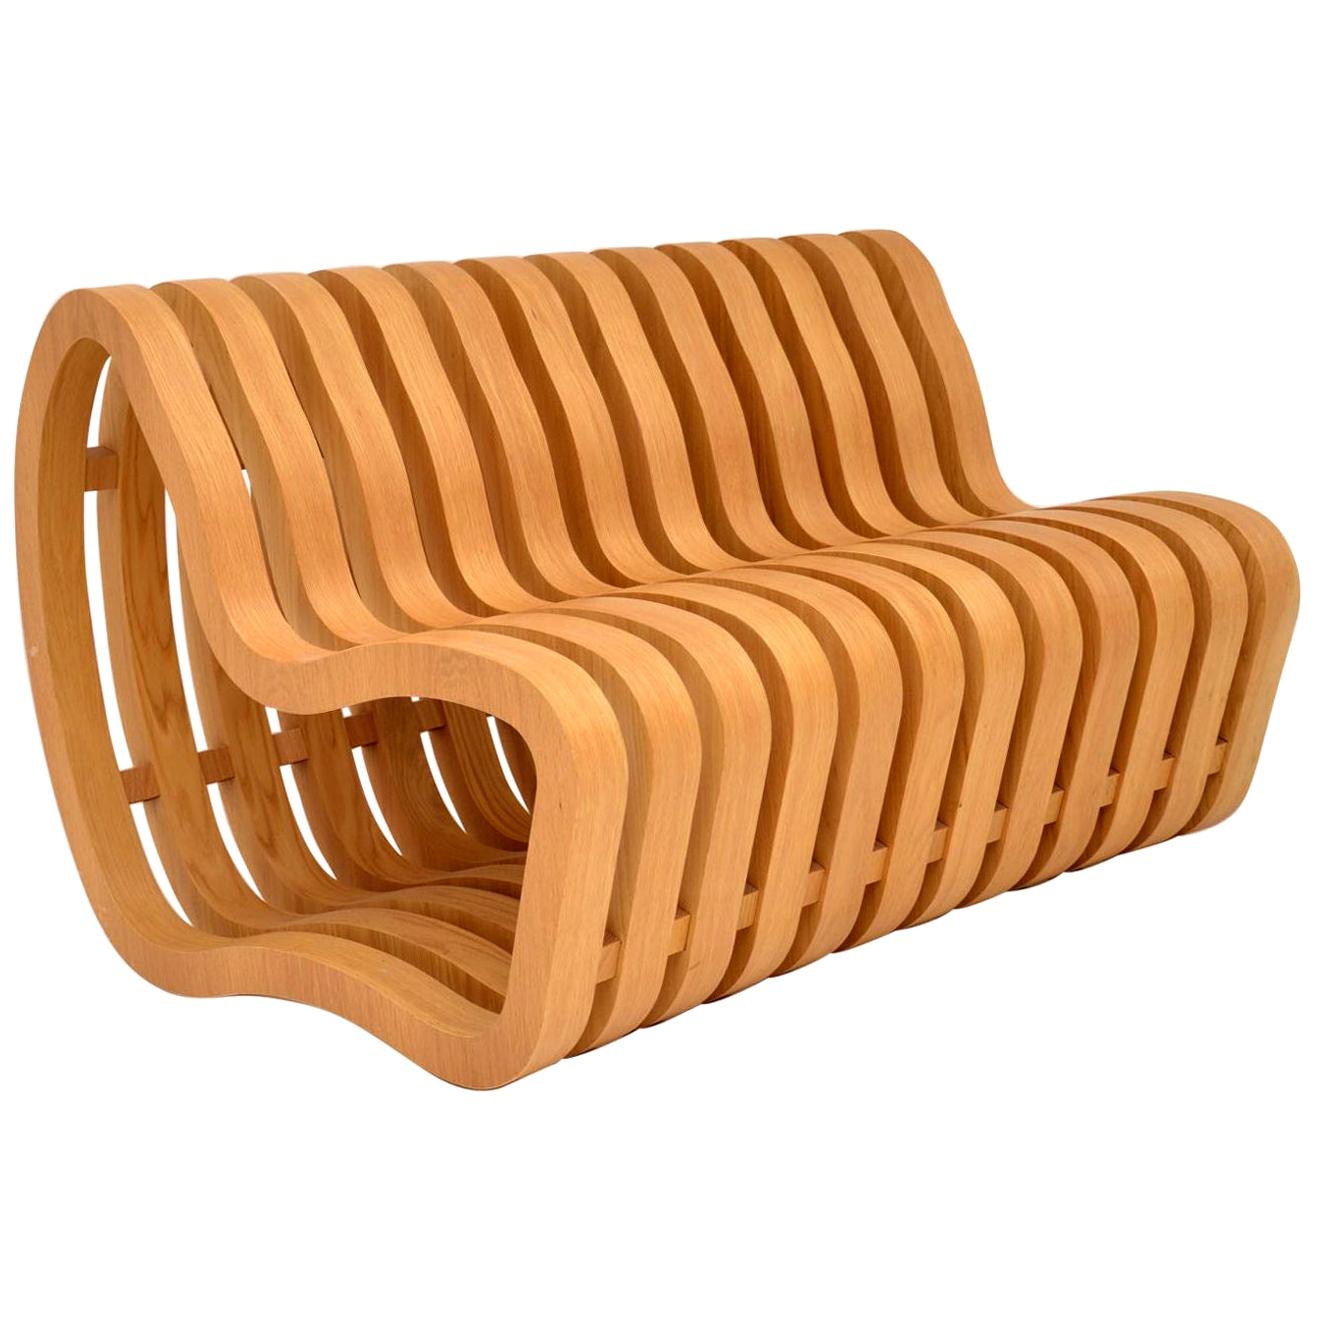 British Modernist “Curve Bench” by Nina Moeller Designs